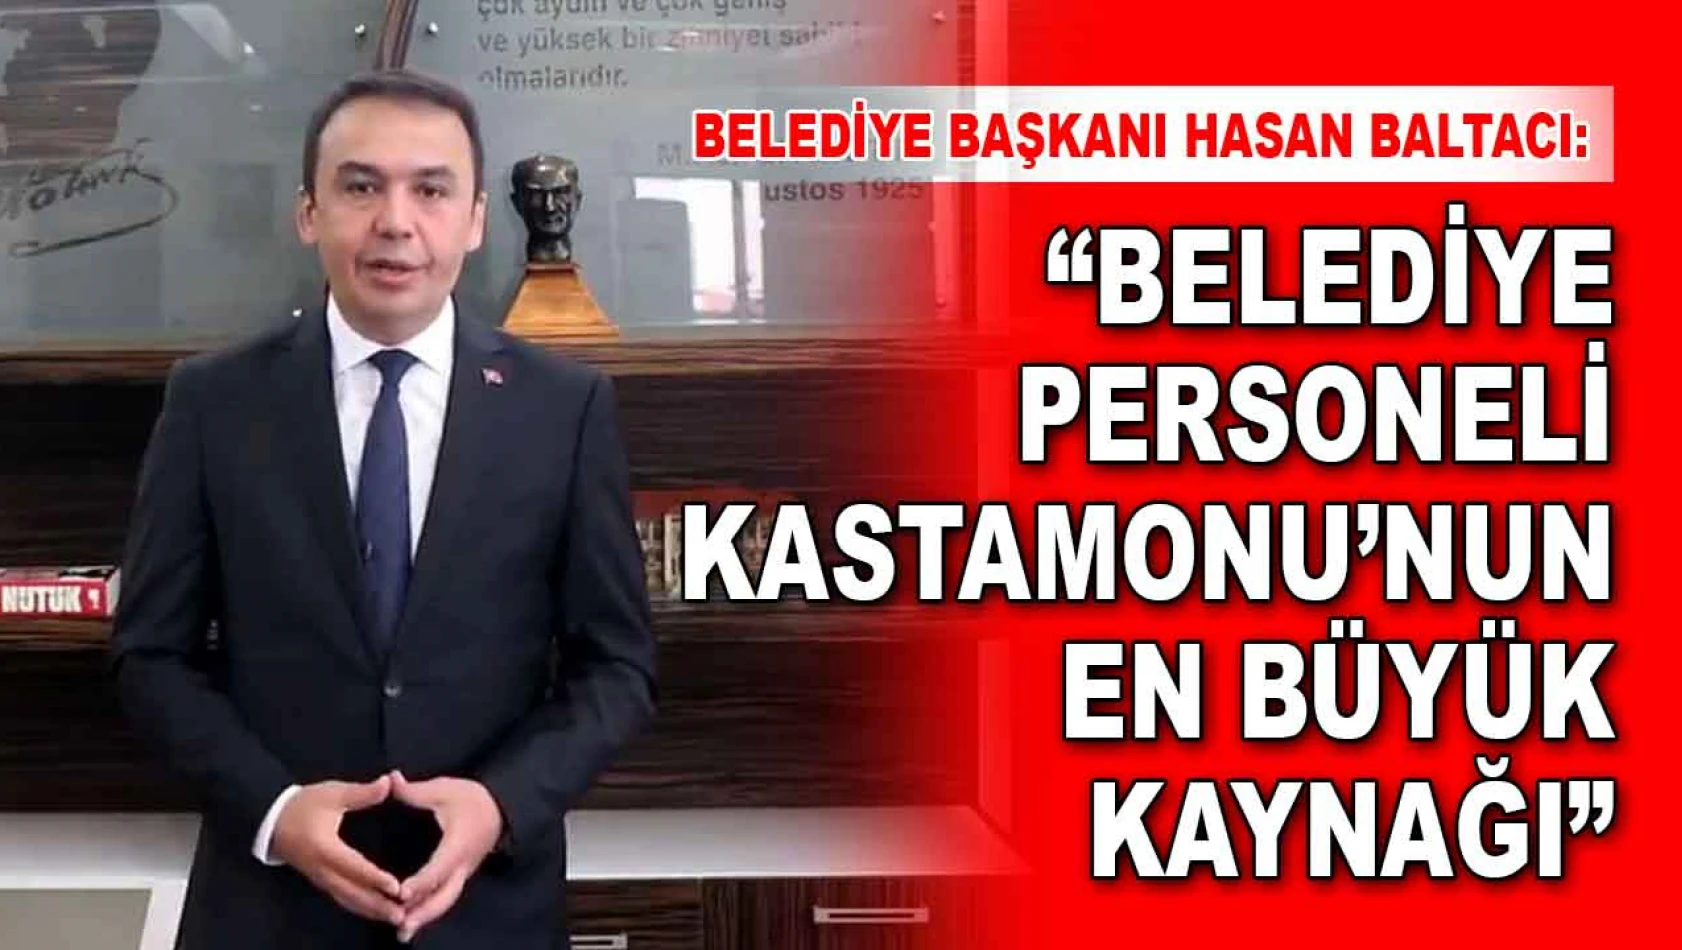 Belediye Başkanı Baltacı: Belediye Personeli Kastamonu'nun En Büyük Kaynağı'